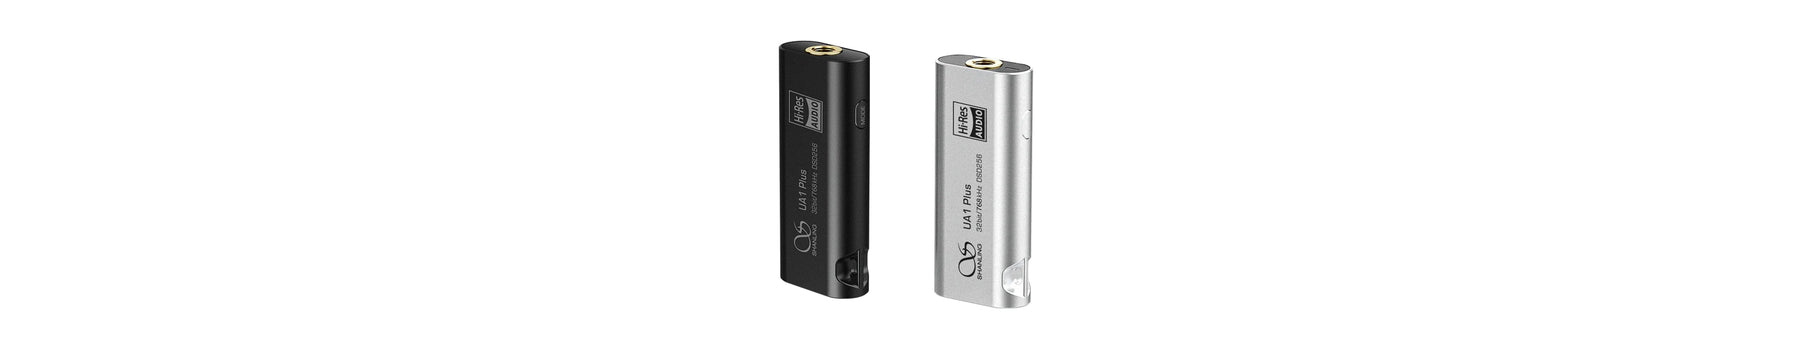 Shanling UA1 Plus Premium Portable USB DAC/AMP News